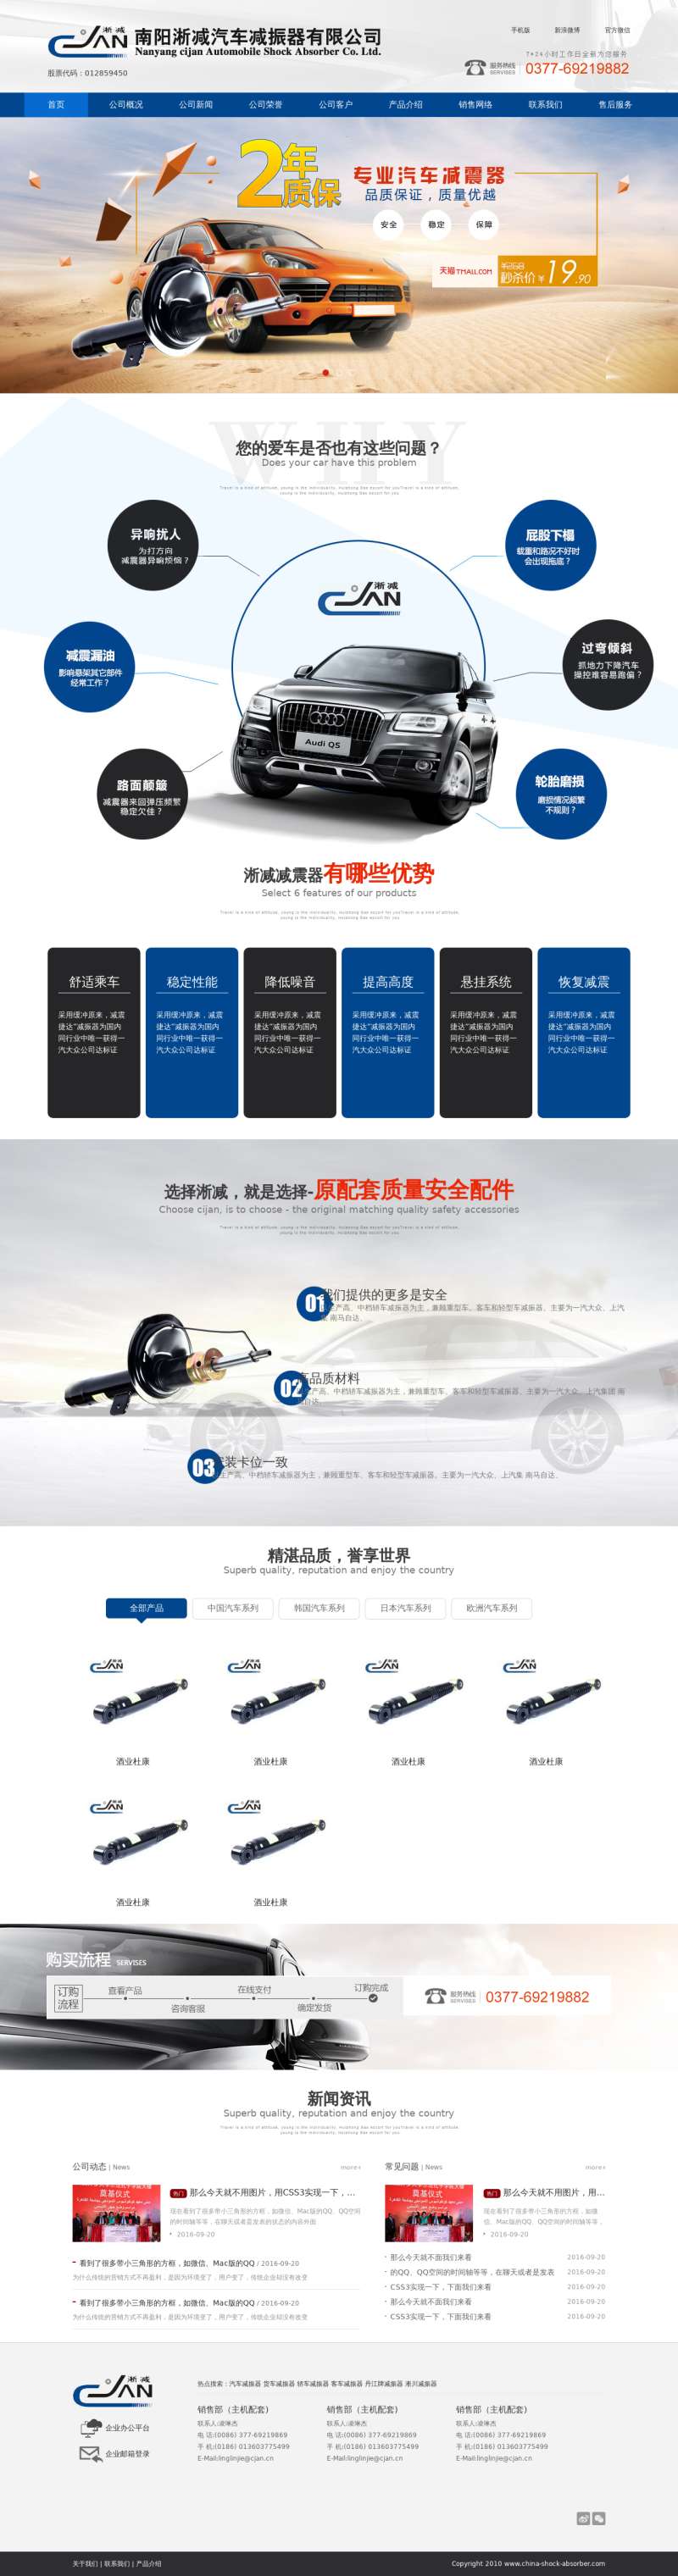 蓝色的汽车设备营销企业网站模板